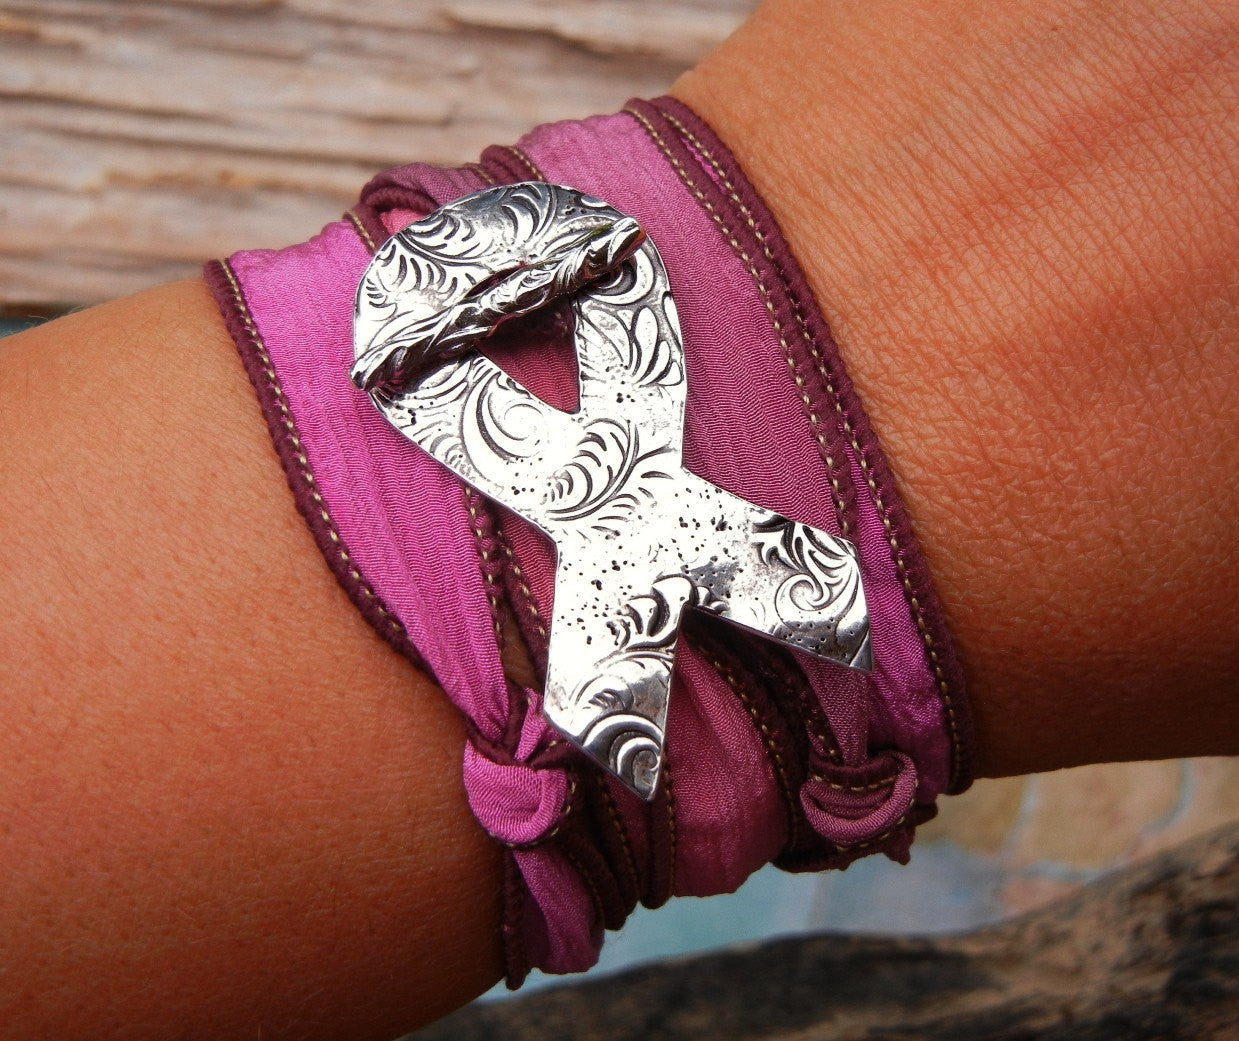 Cancer Awareness Wrap Bracelet - HappyGoLicky Jewelry